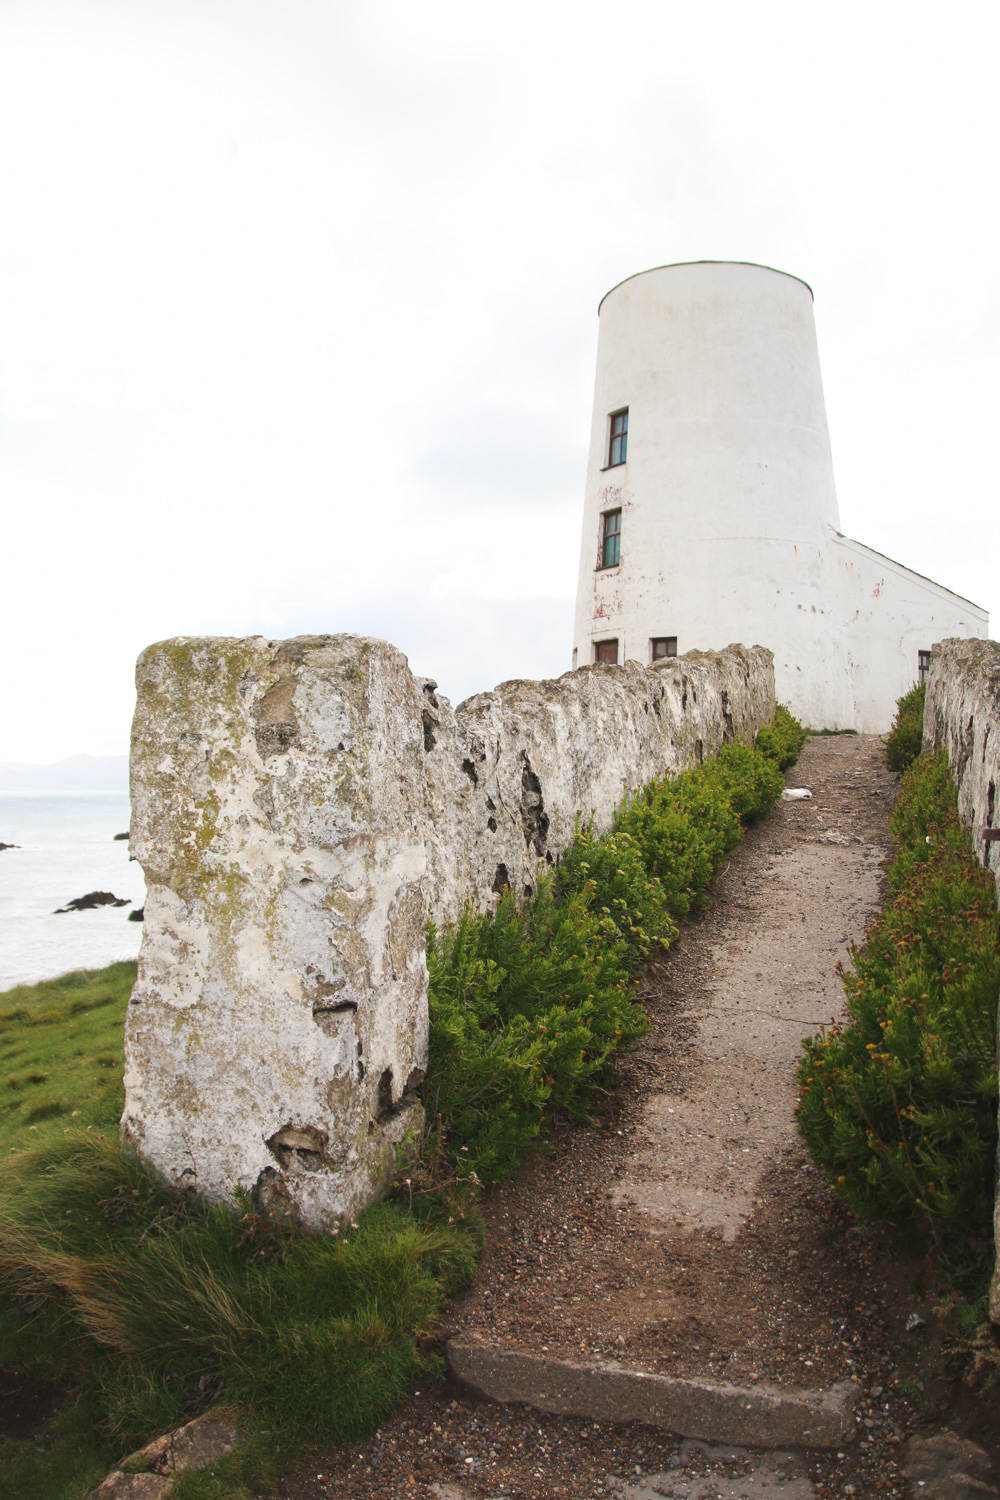 Tŵr Mawr lighthouse, Llanddwyn Island, Anglesey, Wales